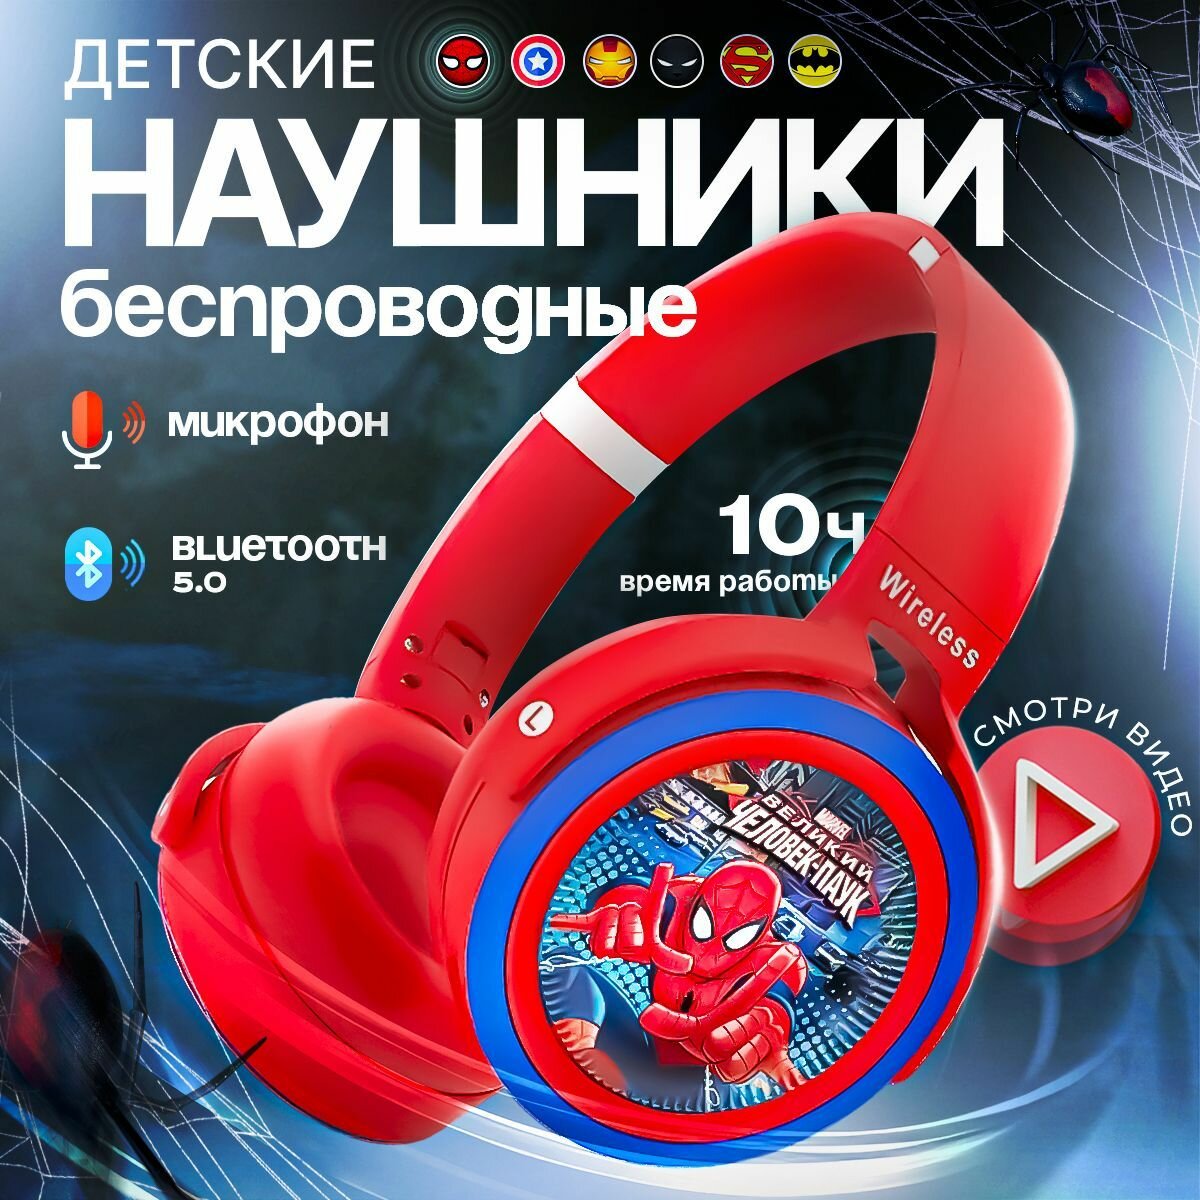 Наушники детские беспроводные Человек-паук KA-906, с Bluetooth 5.0, с микрофоном, красные